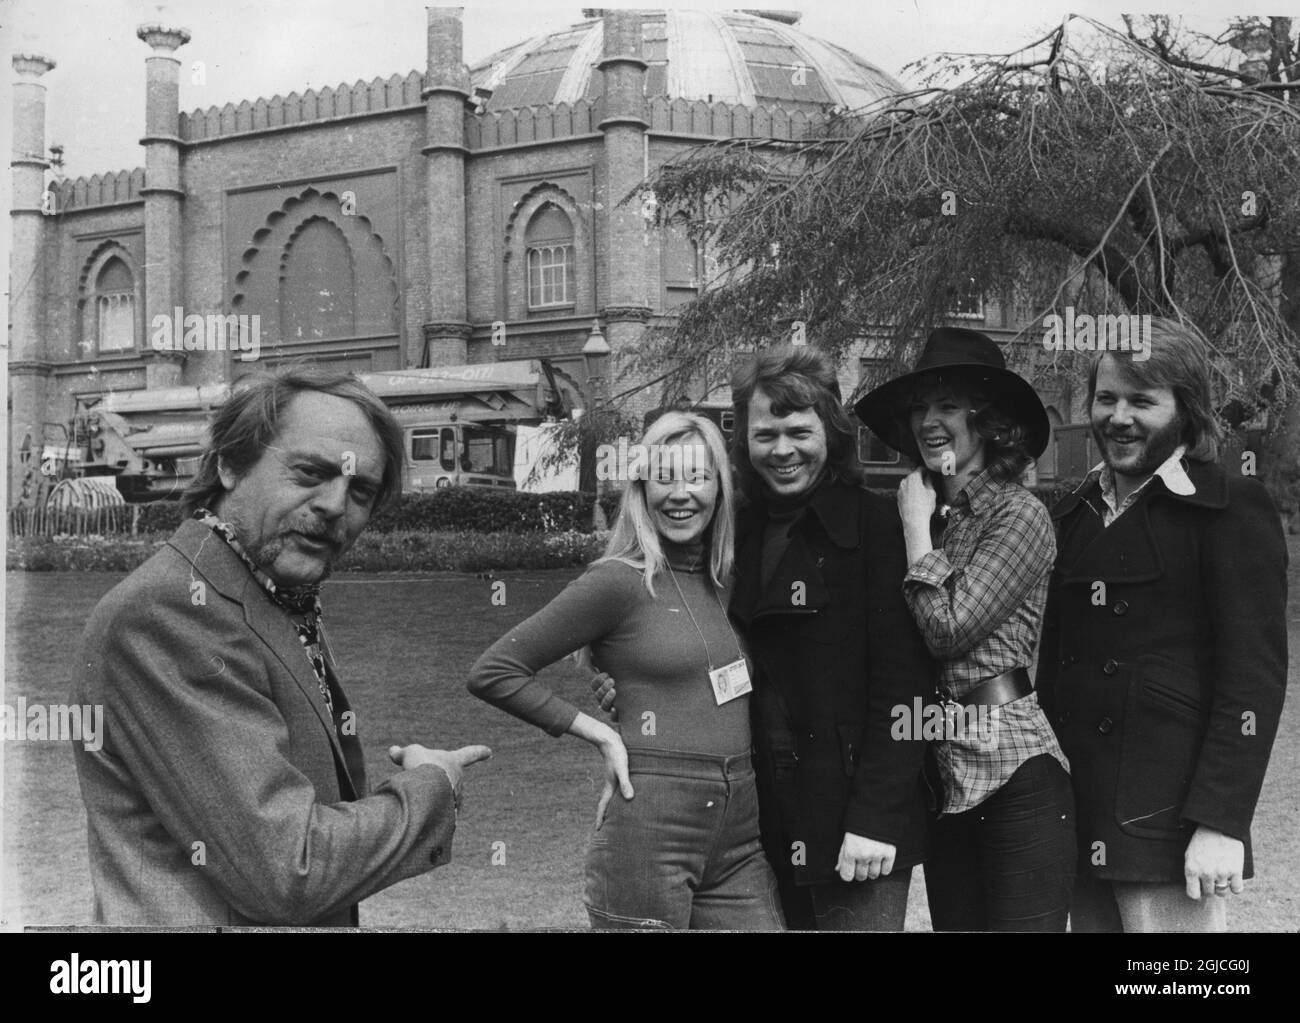 BRIGHTON 1974. ABBA - il manager Stickan Andersson e i membri ABBA il giorno prima del Concorso Eurovisione. Benny Andersson, Bjorn Ulvaeus, Anni-Frid Frida Lyngstad e Agnetha Faltskog Foto Stock